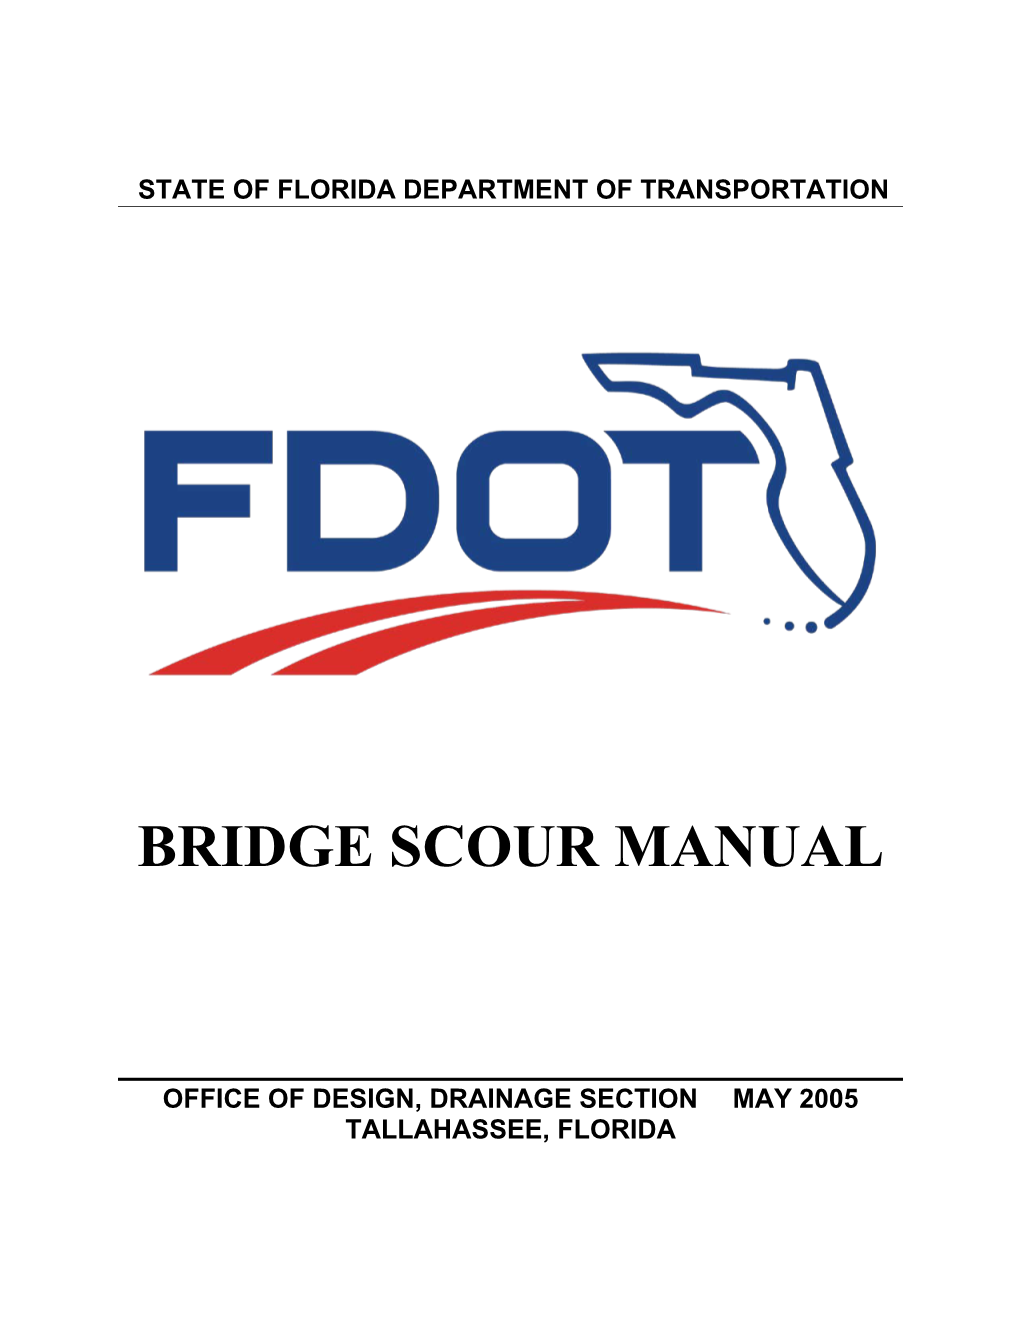 Bridge Scour Manual